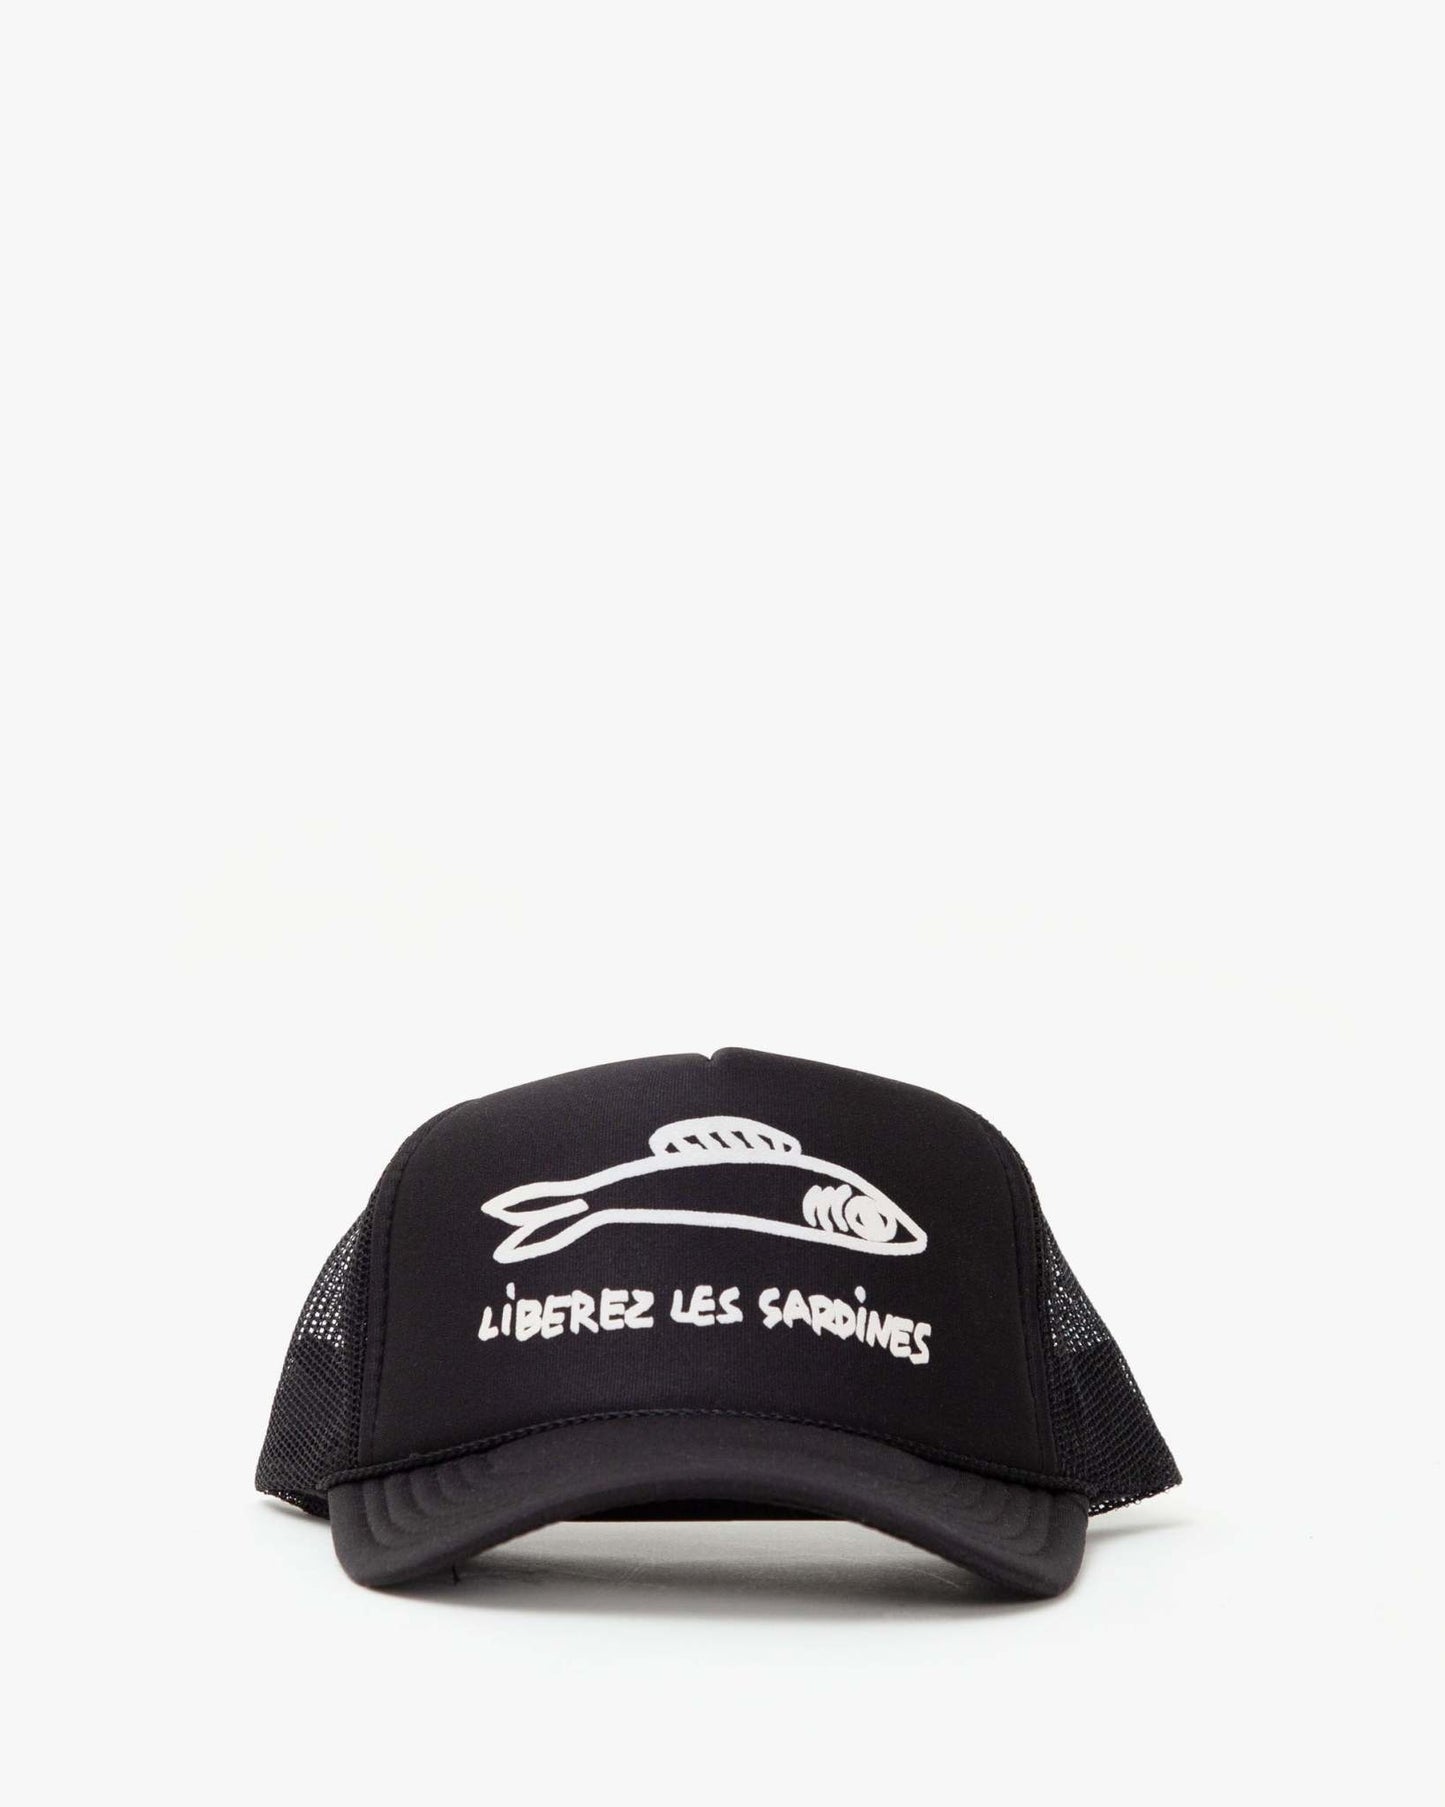 Trucker Hat in Sardines Black